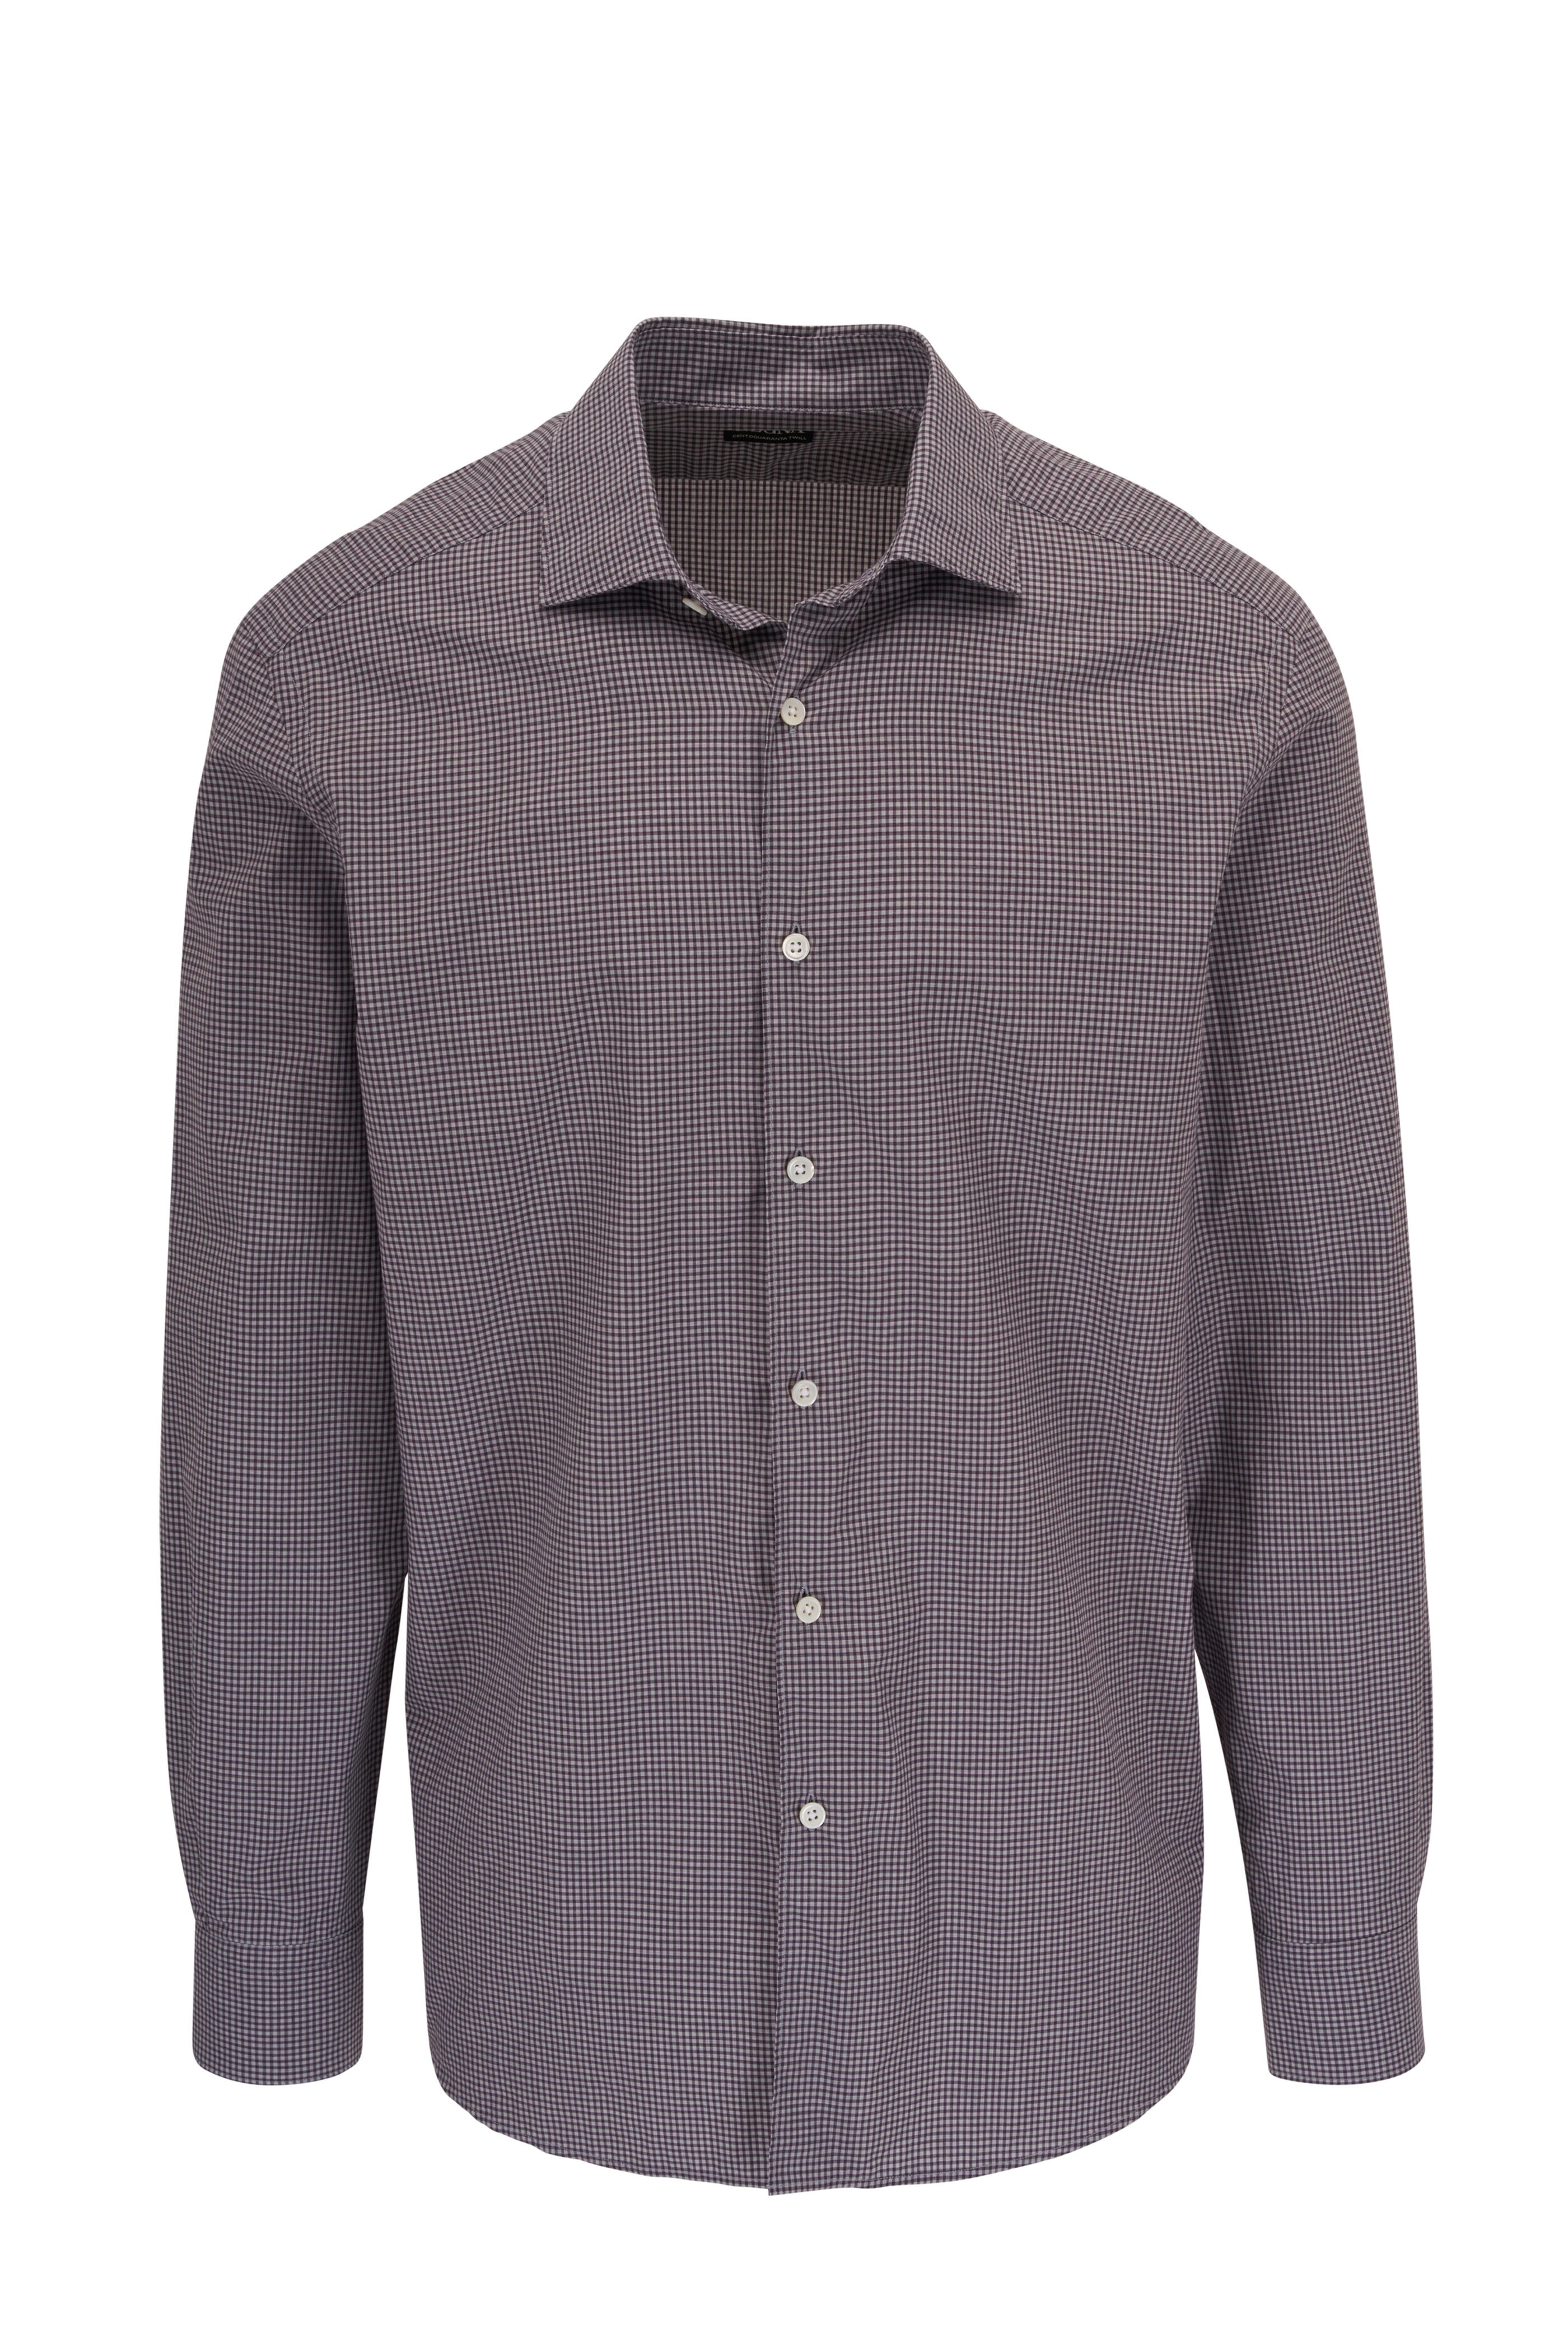 Zegna - Burgundy Mini Check Cotton Sport Shirt | Mitchell Stores